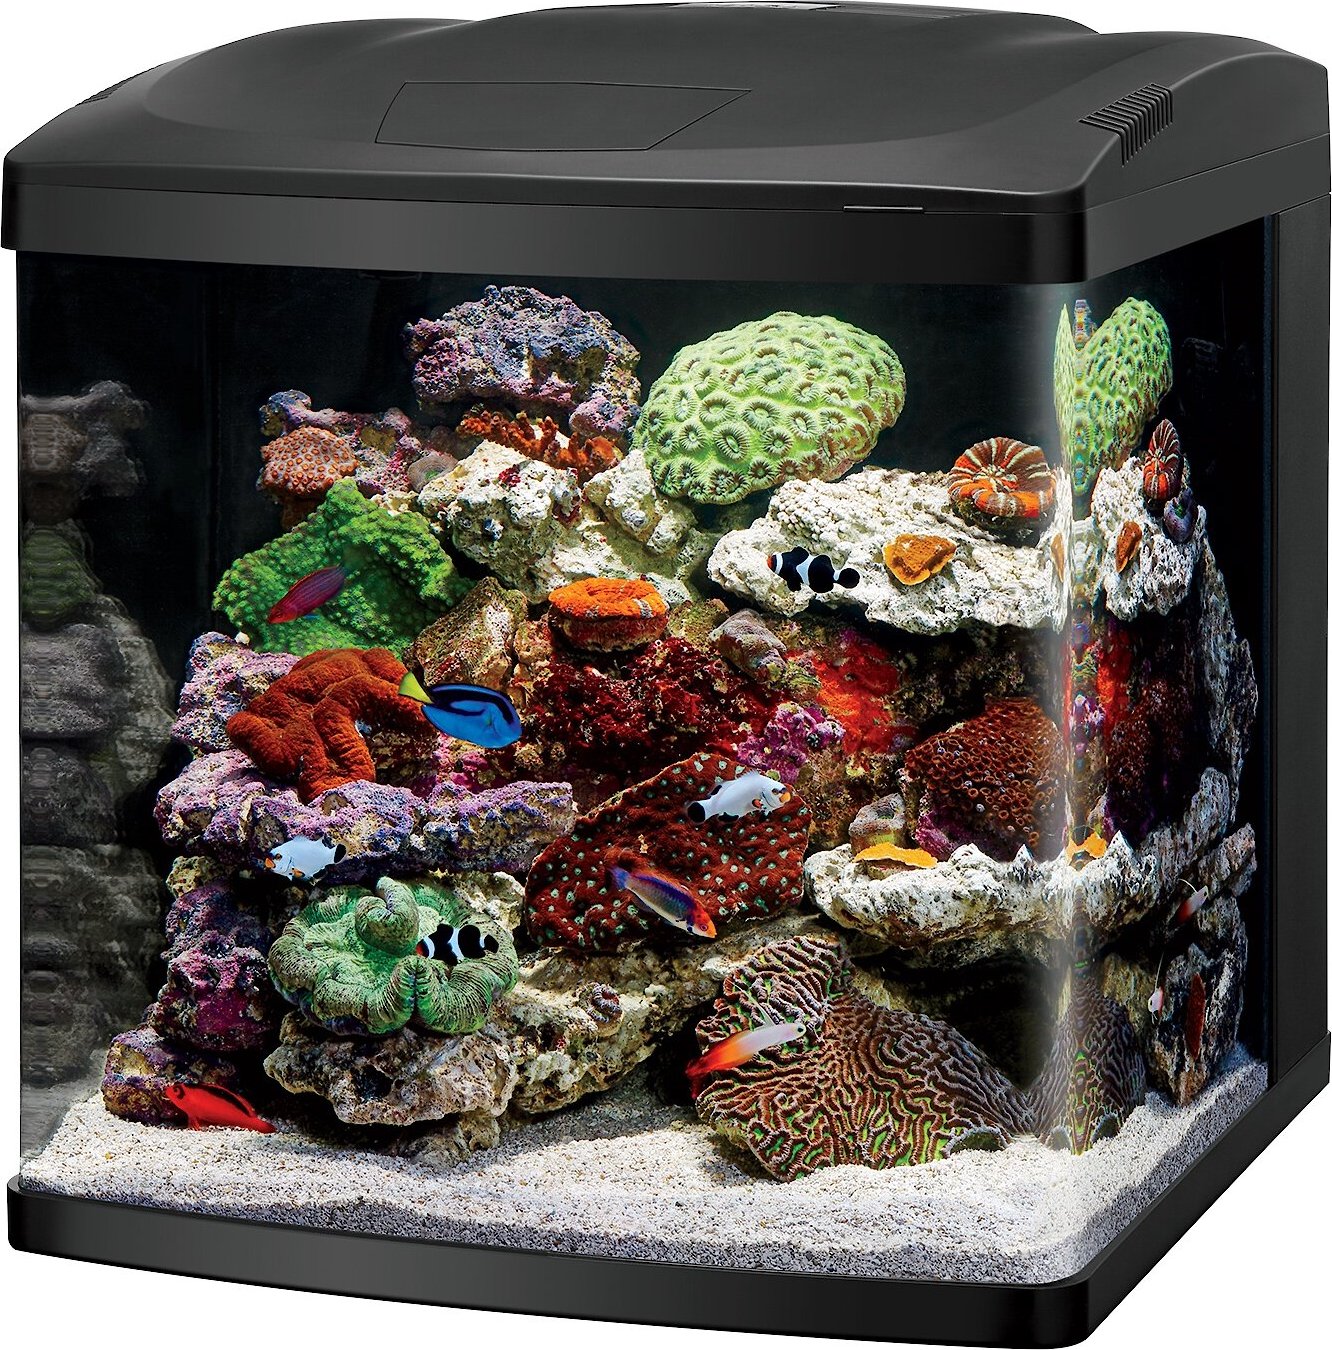 Coralife Biocube Aquarium - 32 Gallon